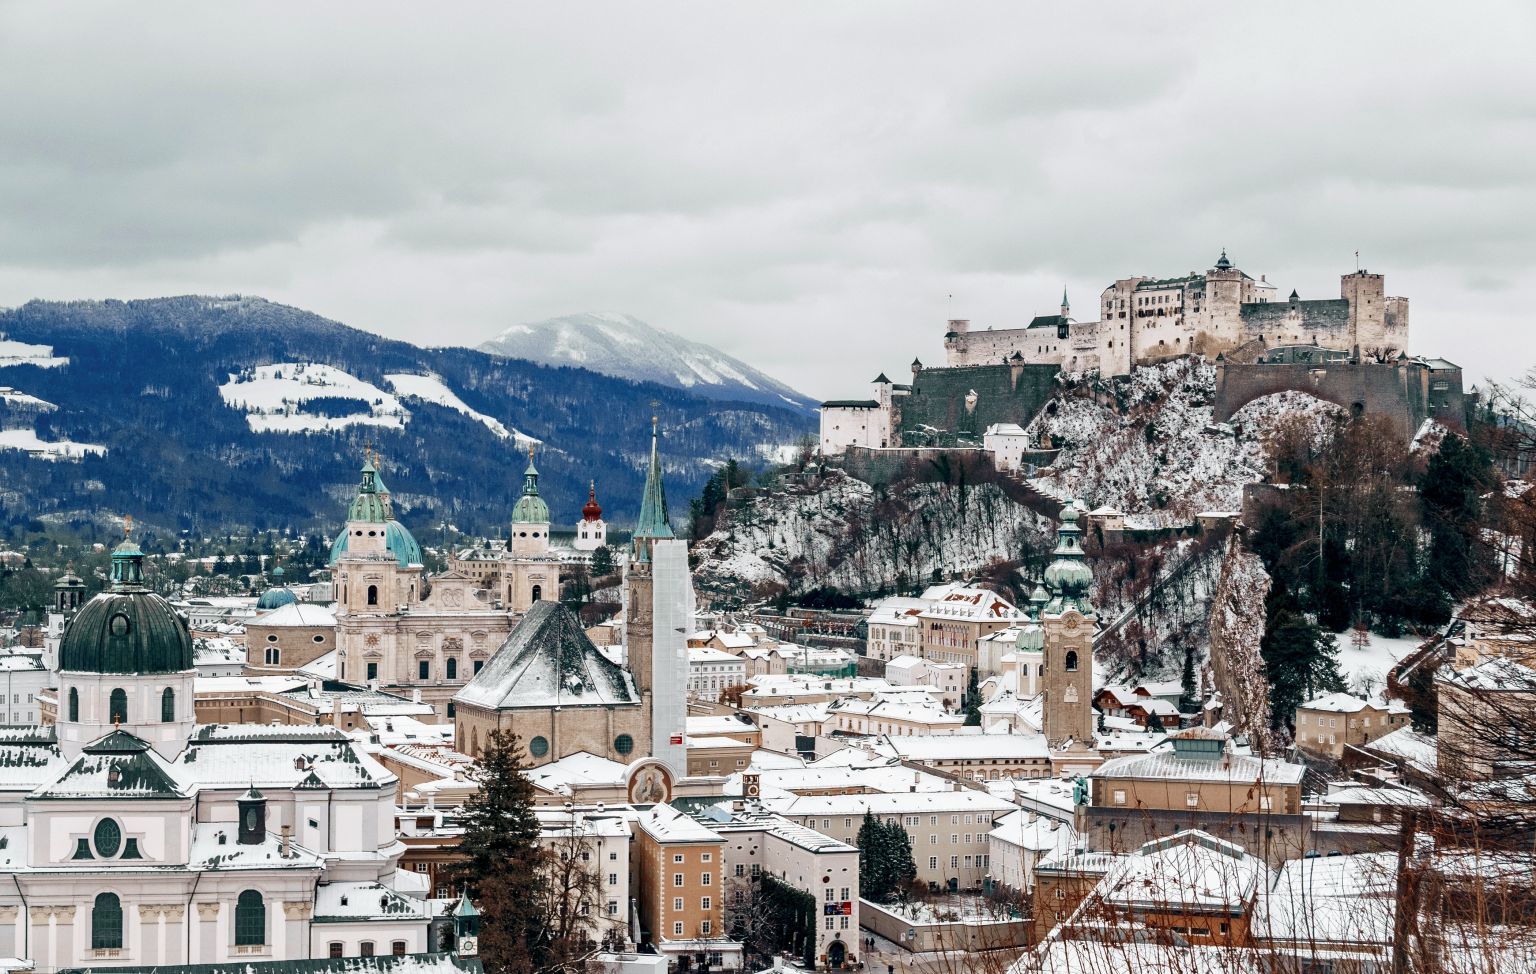 Immobilienmarkt in Salzburg: Hohe Nachfrage befeuert Preise